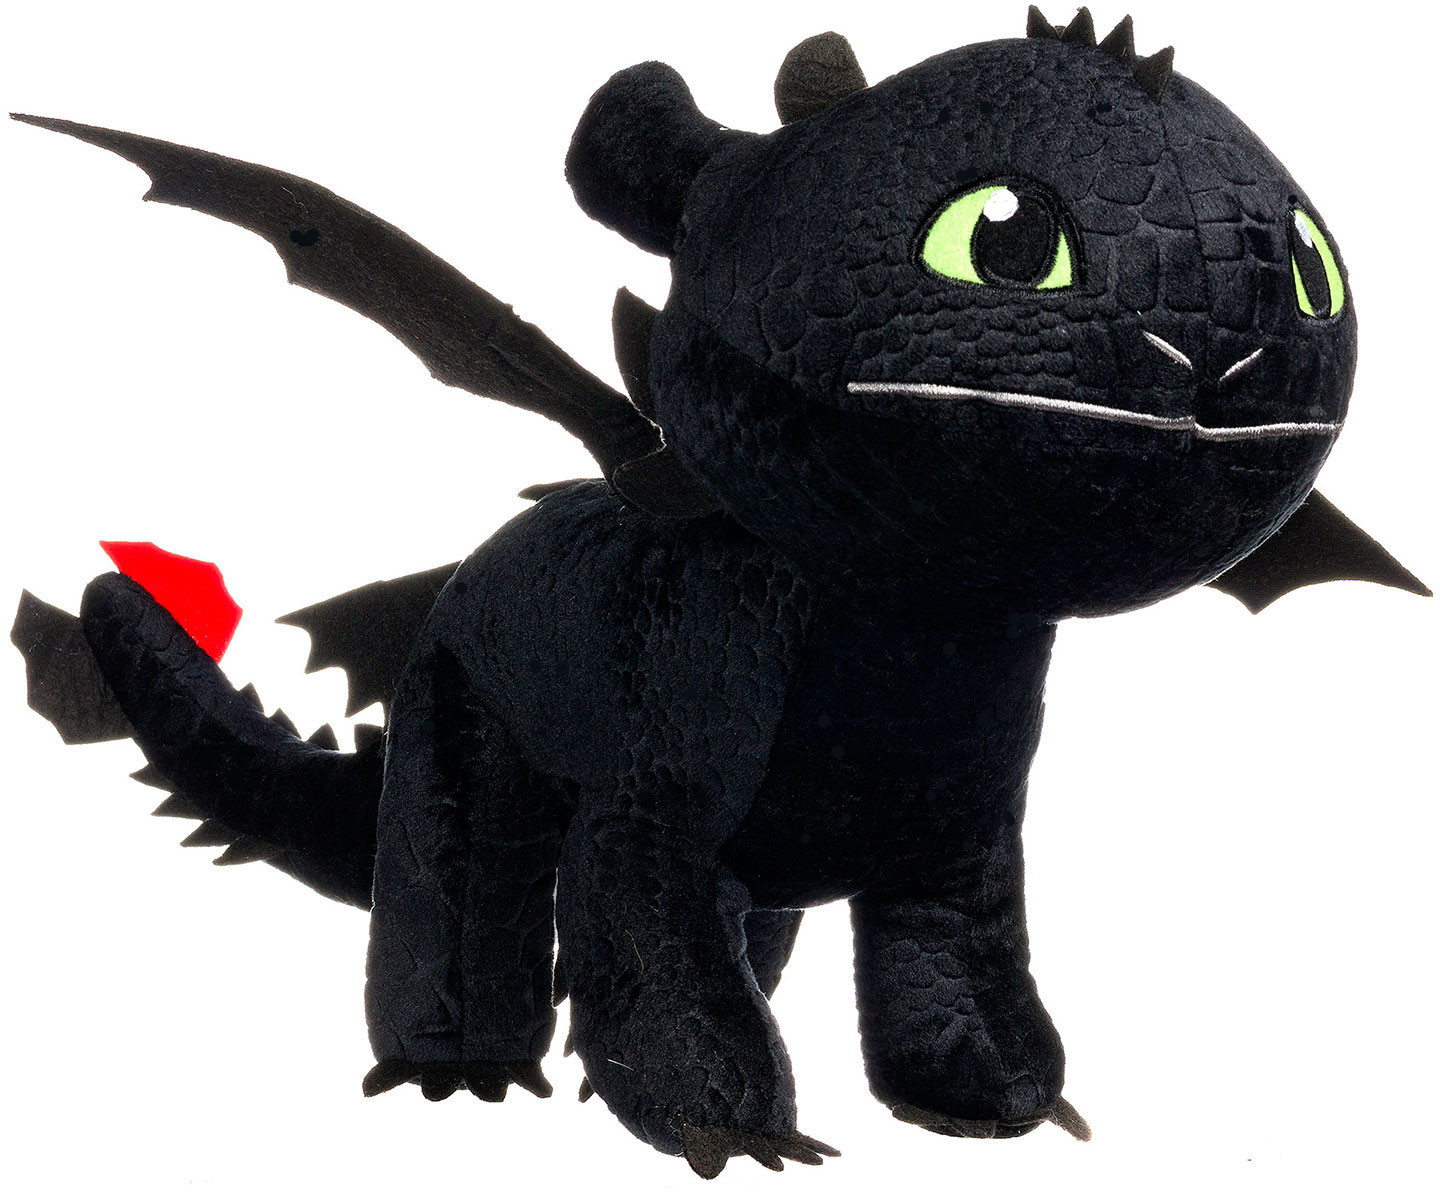 66,93 cm Ohnezahn bei DreamWorks 70 gemacht Dragons € Preisvergleich ab Drachenzähmen leicht |